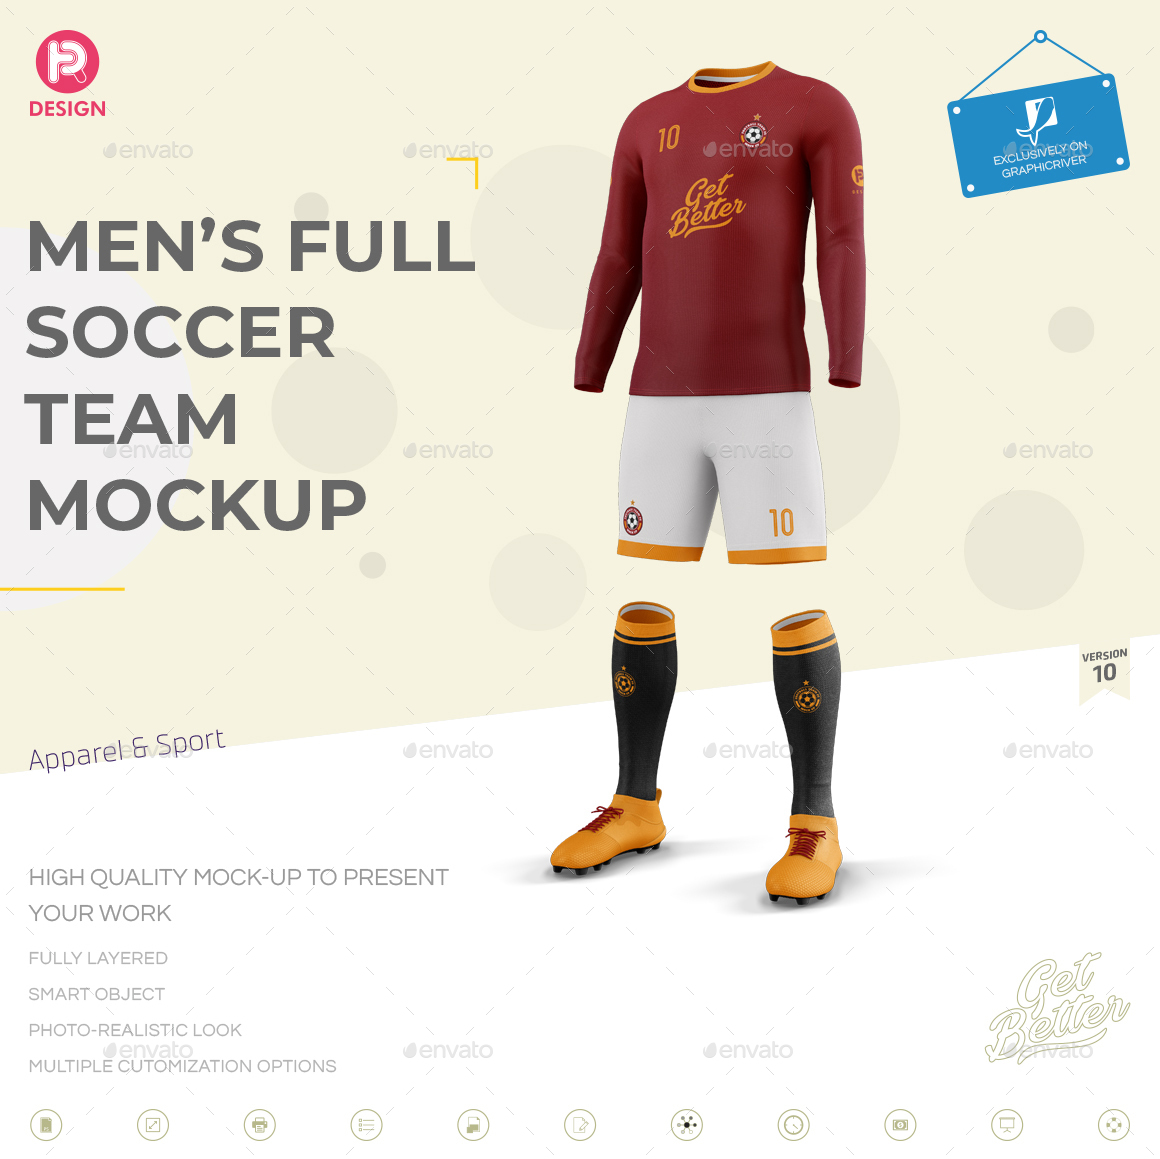 Men's Full Soccer Team Kit mockup V10 by TRDesignme ...